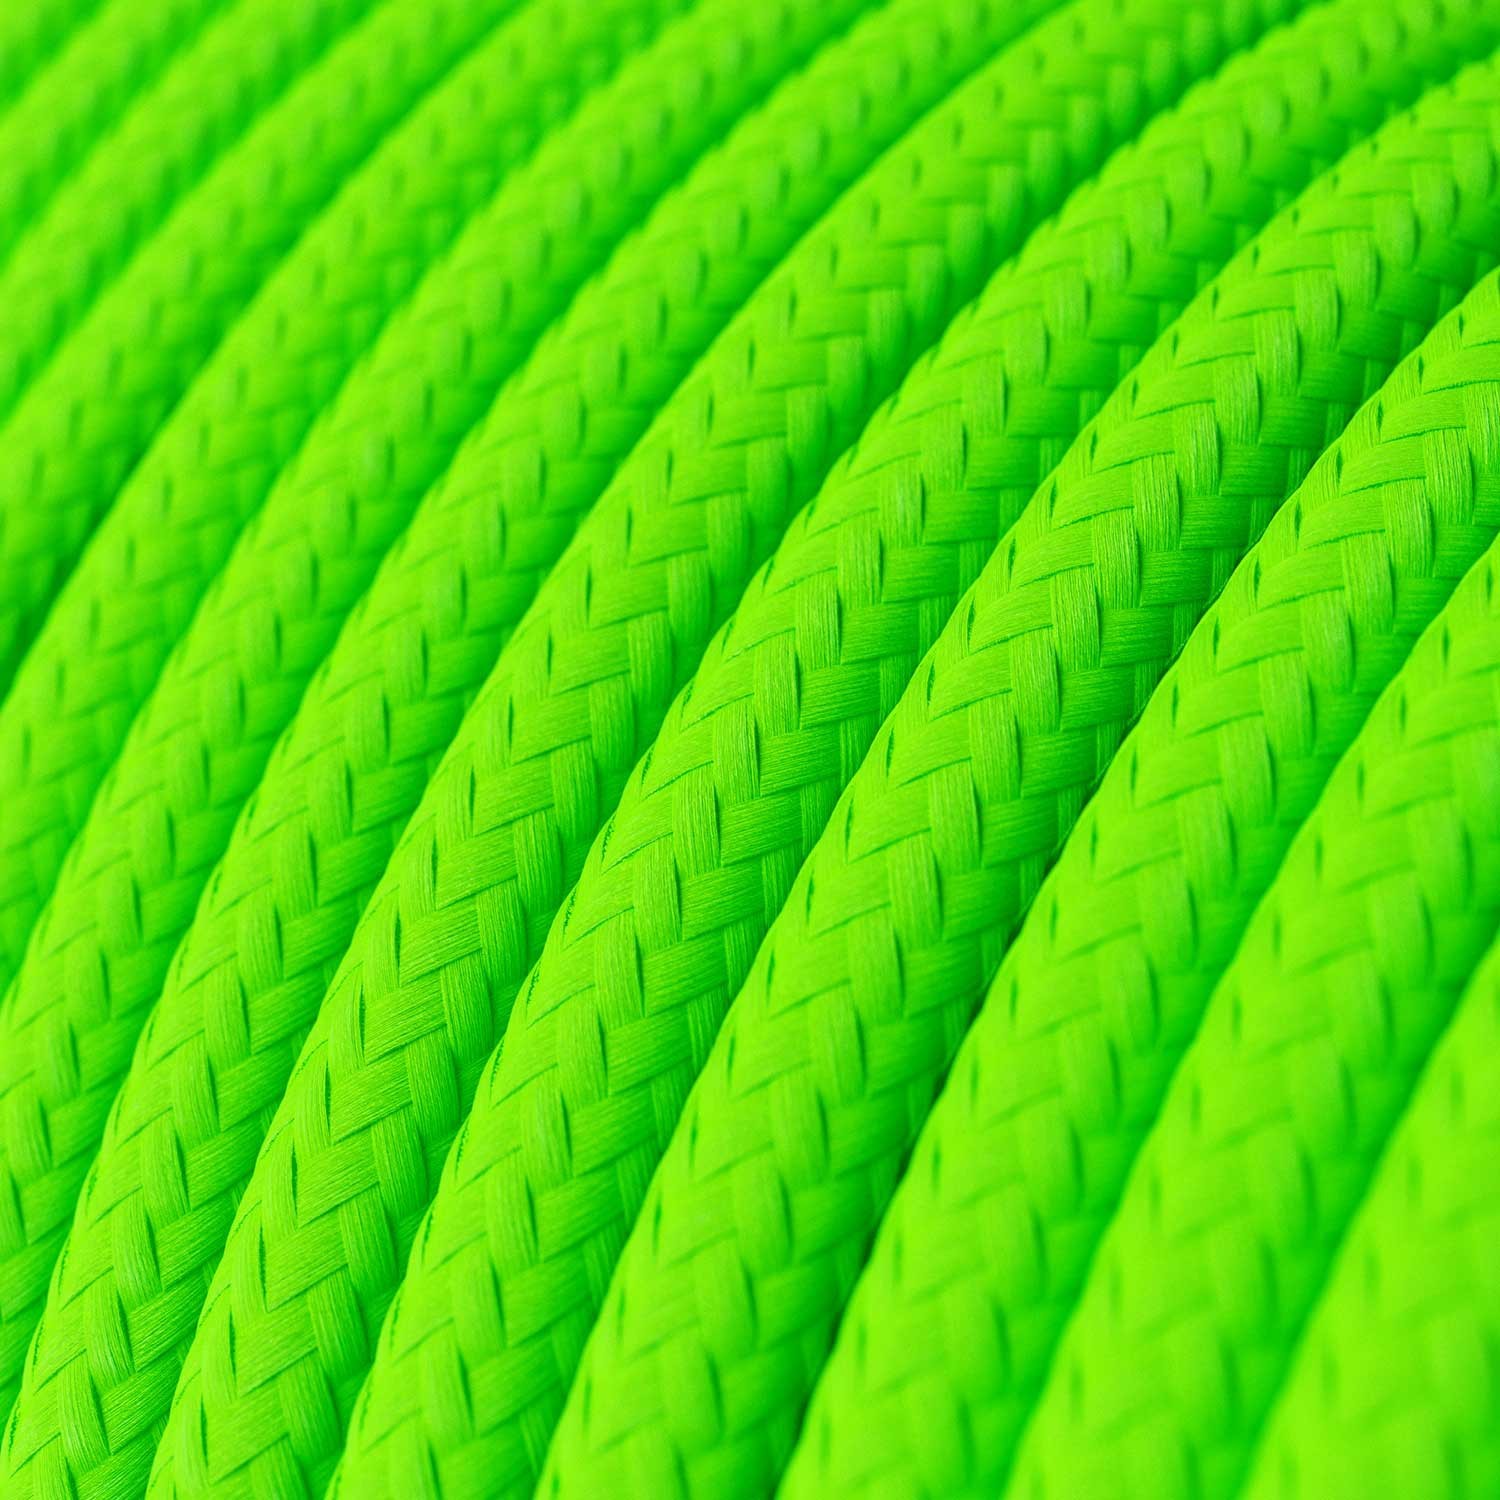 Okrugli tekstilni električni kabel Fluo zelena RF06